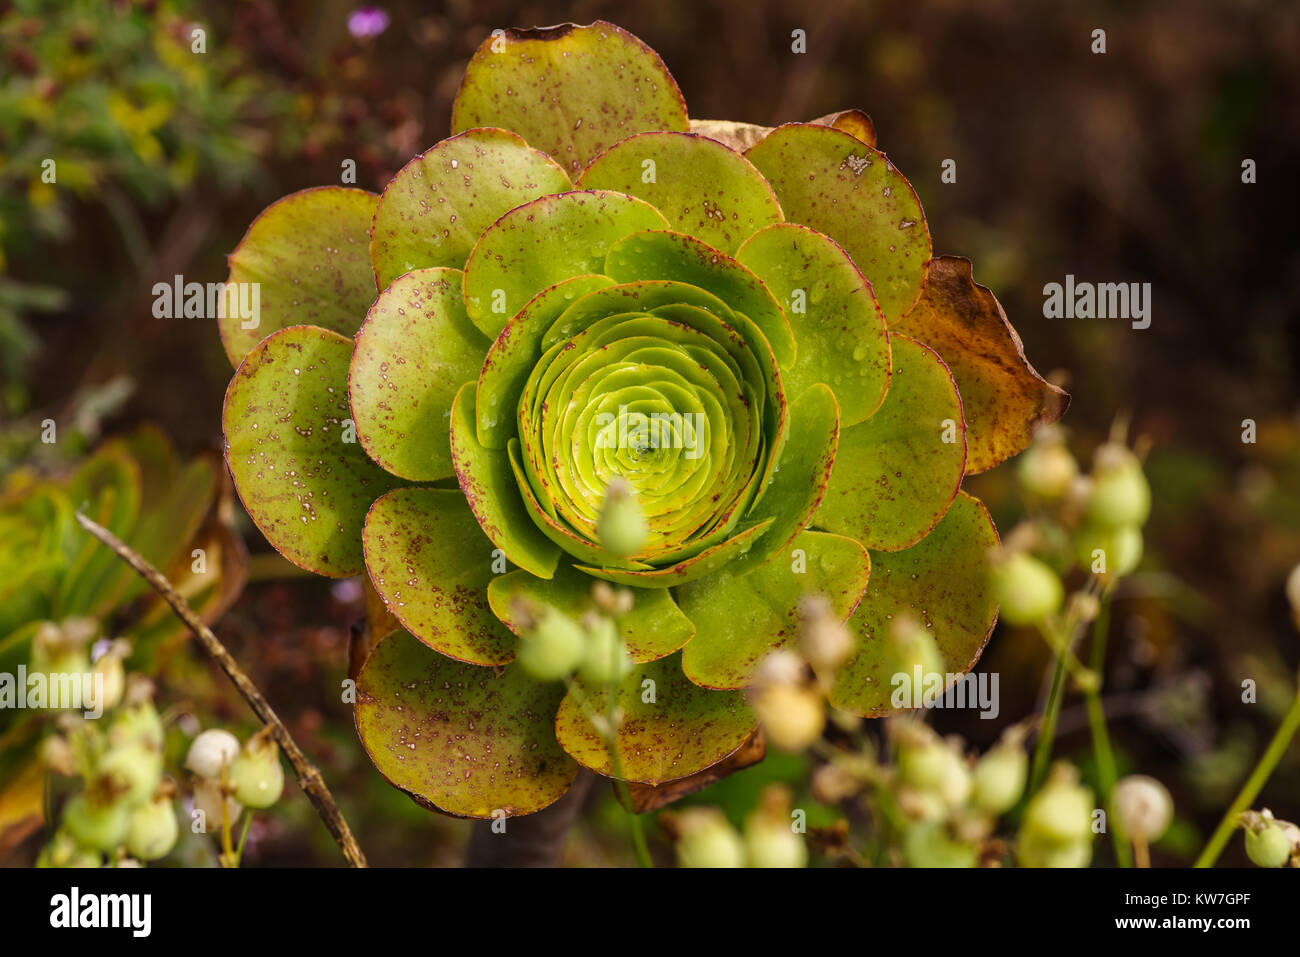 Close-Up of succulent plant, Aeonium percarneum Stock Photo